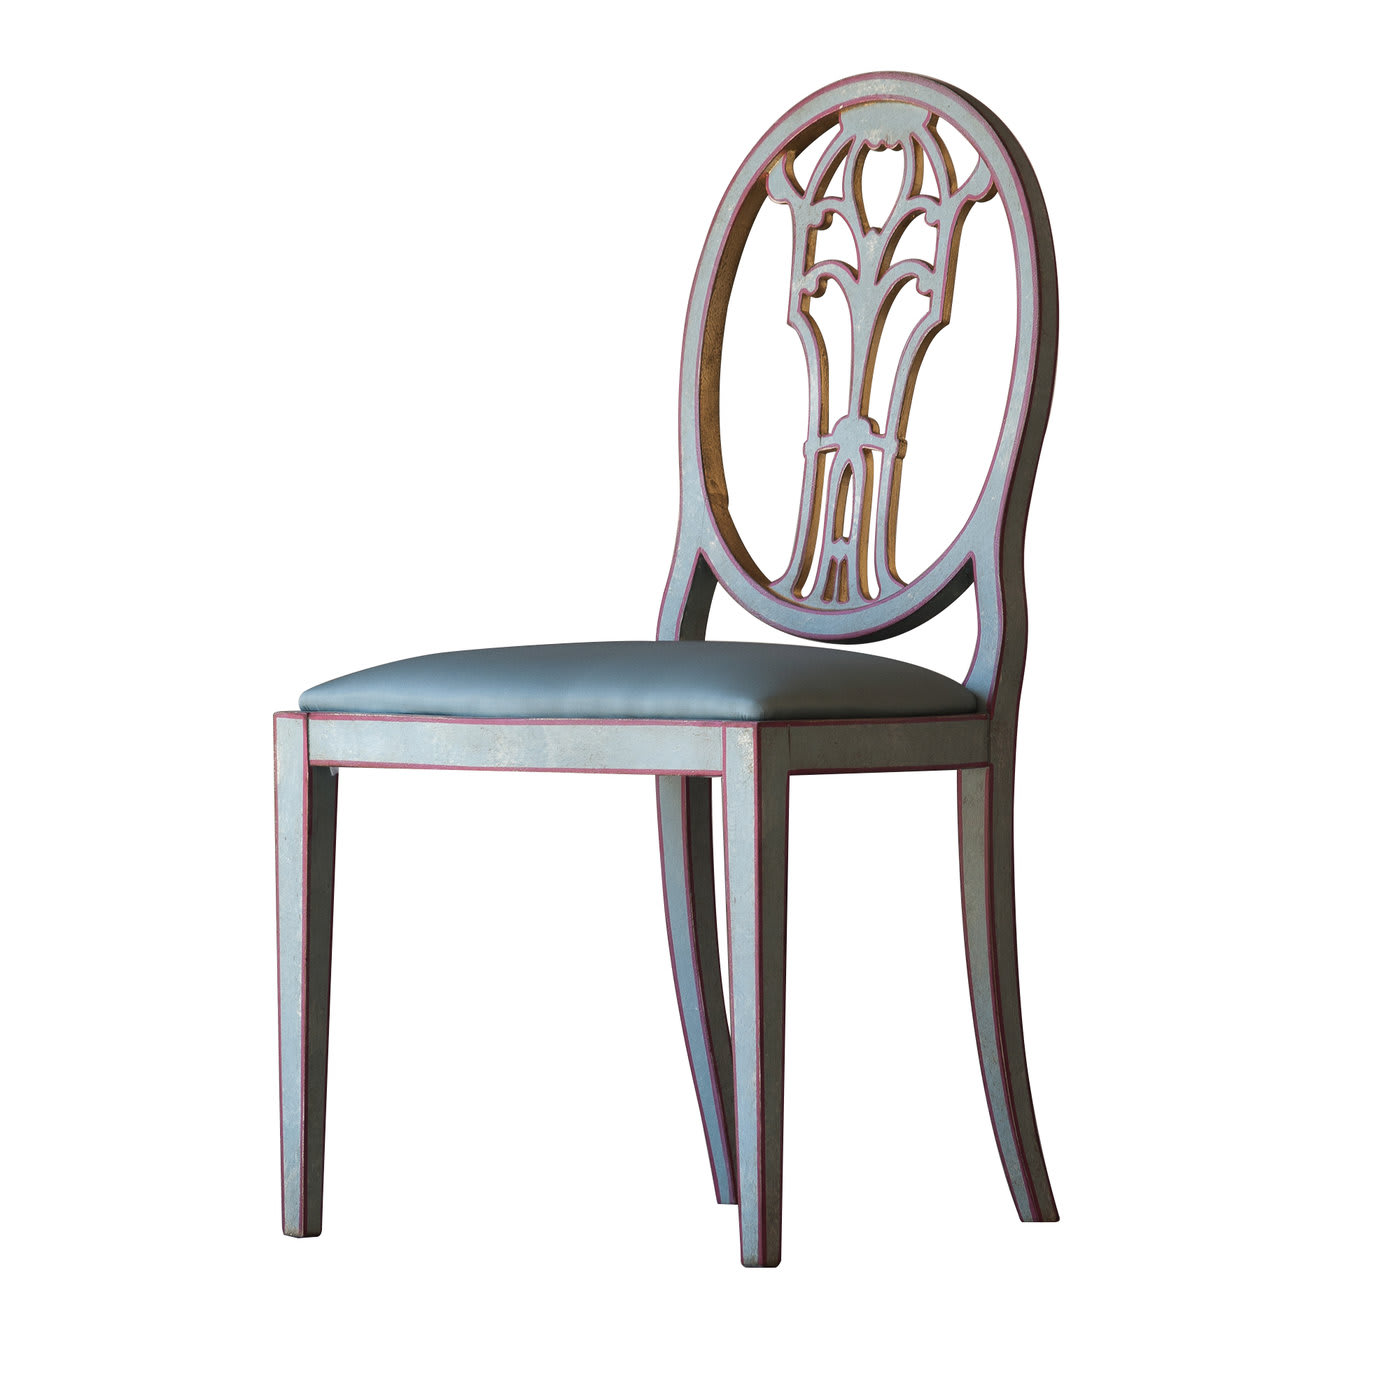 Cornaro Side Chair - Porte Italia